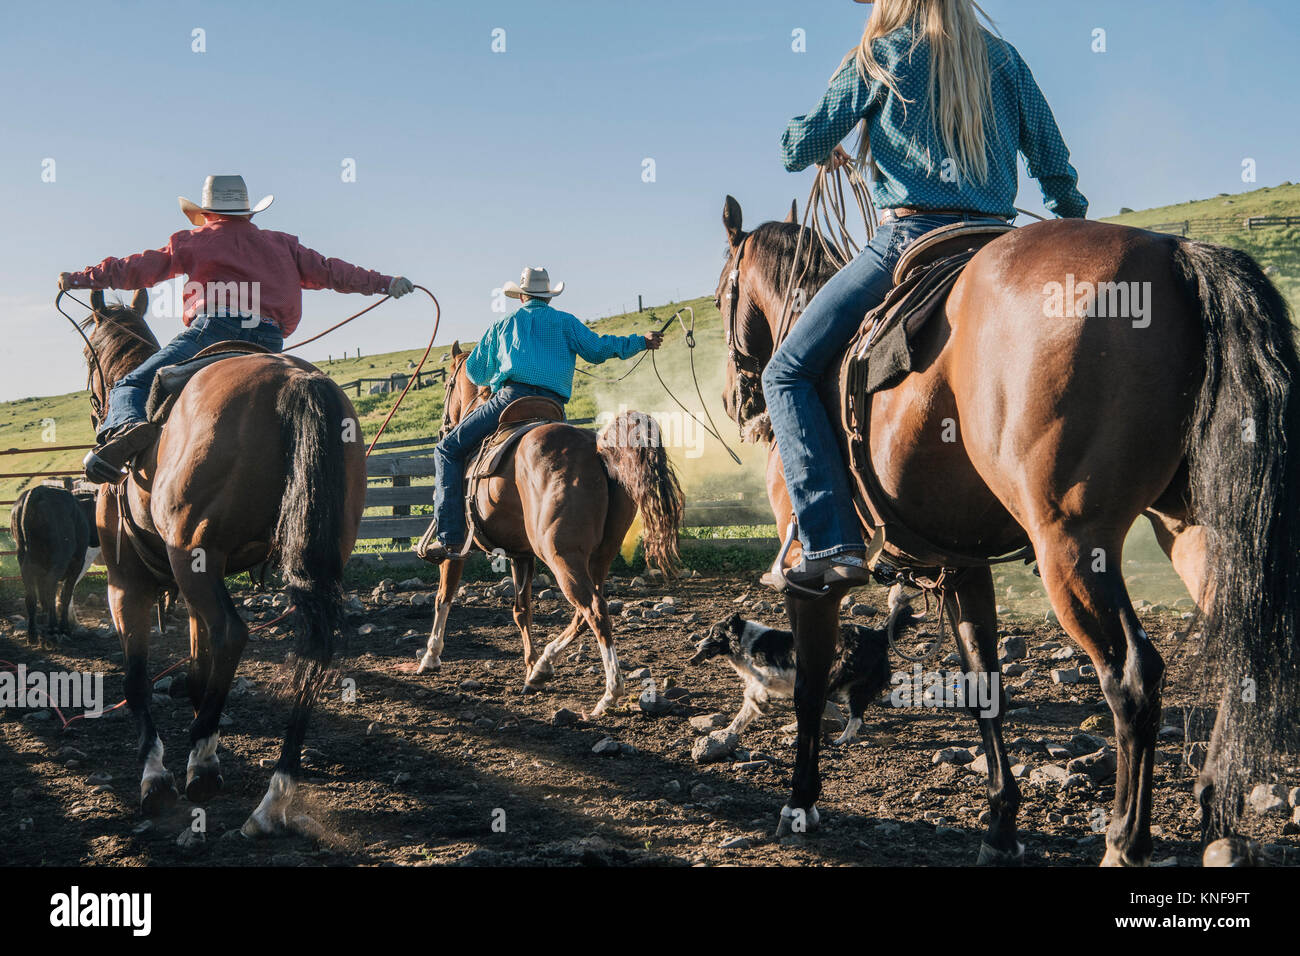 Cowboys et cowgirls sur les chevaux lasso bull, Enterprise, Oregon, United States, Amérique du Nord Banque D'Images